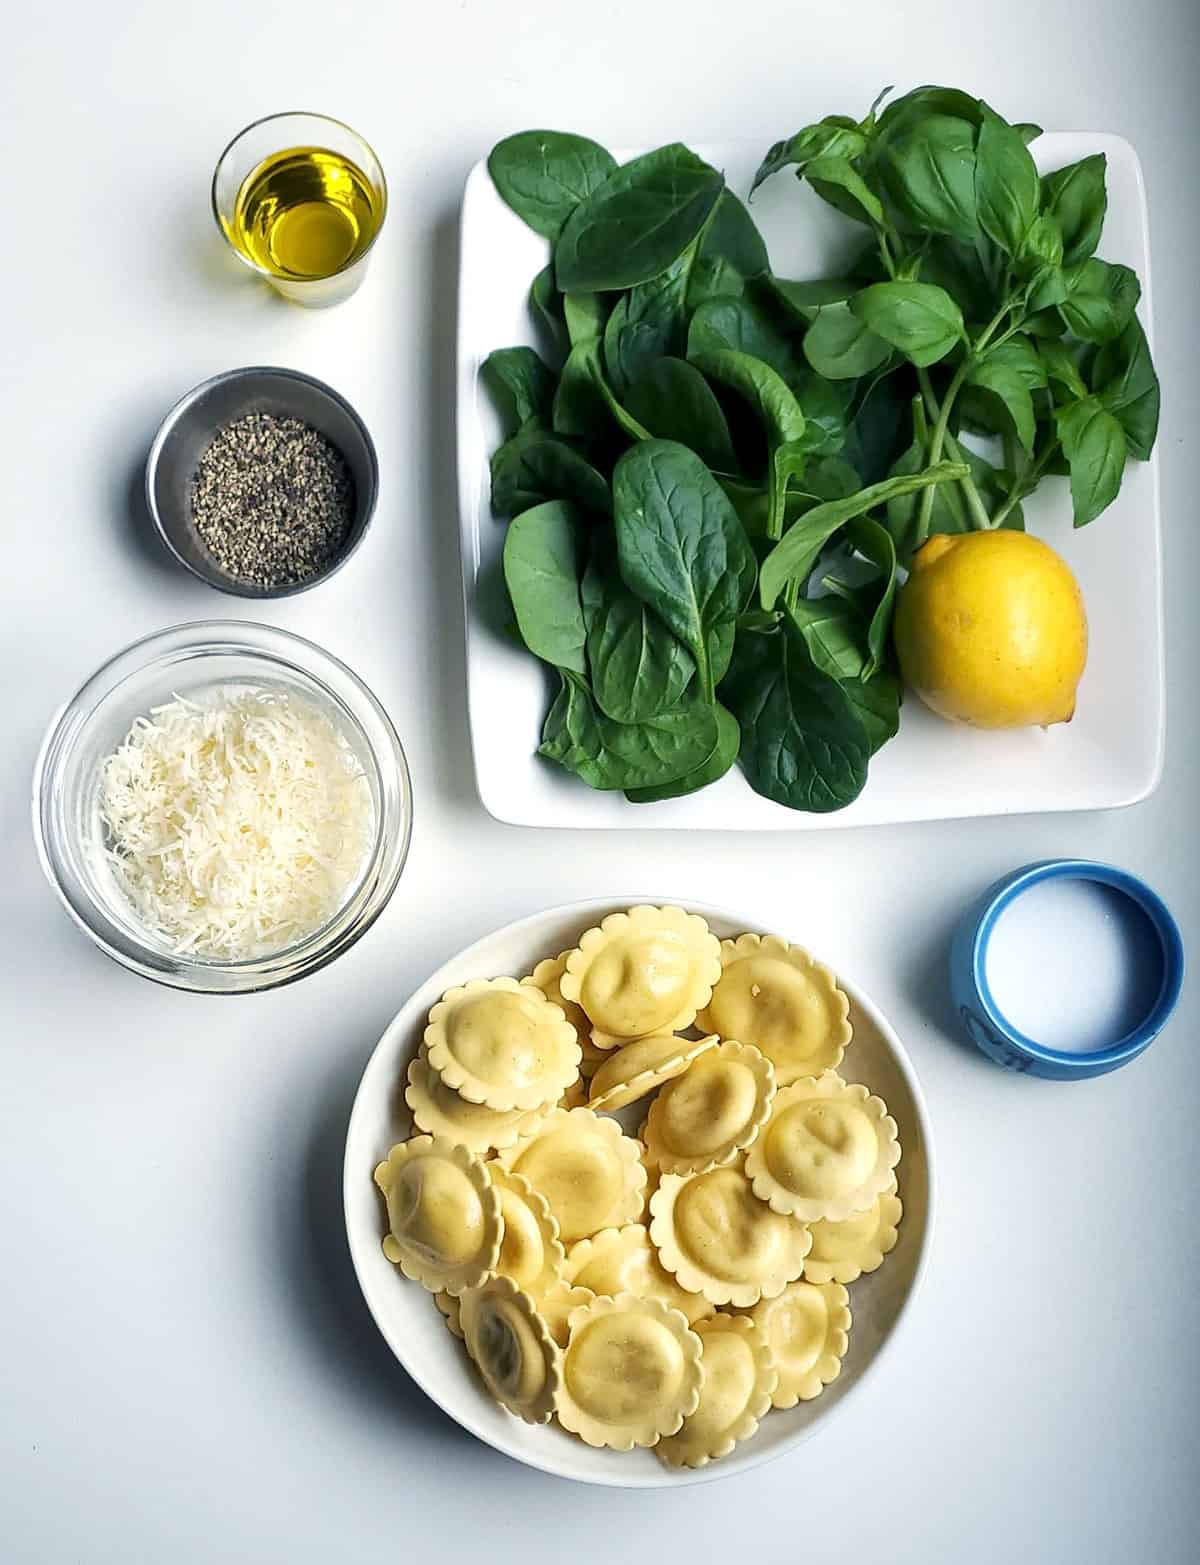 Ingredients To Make Ravioli